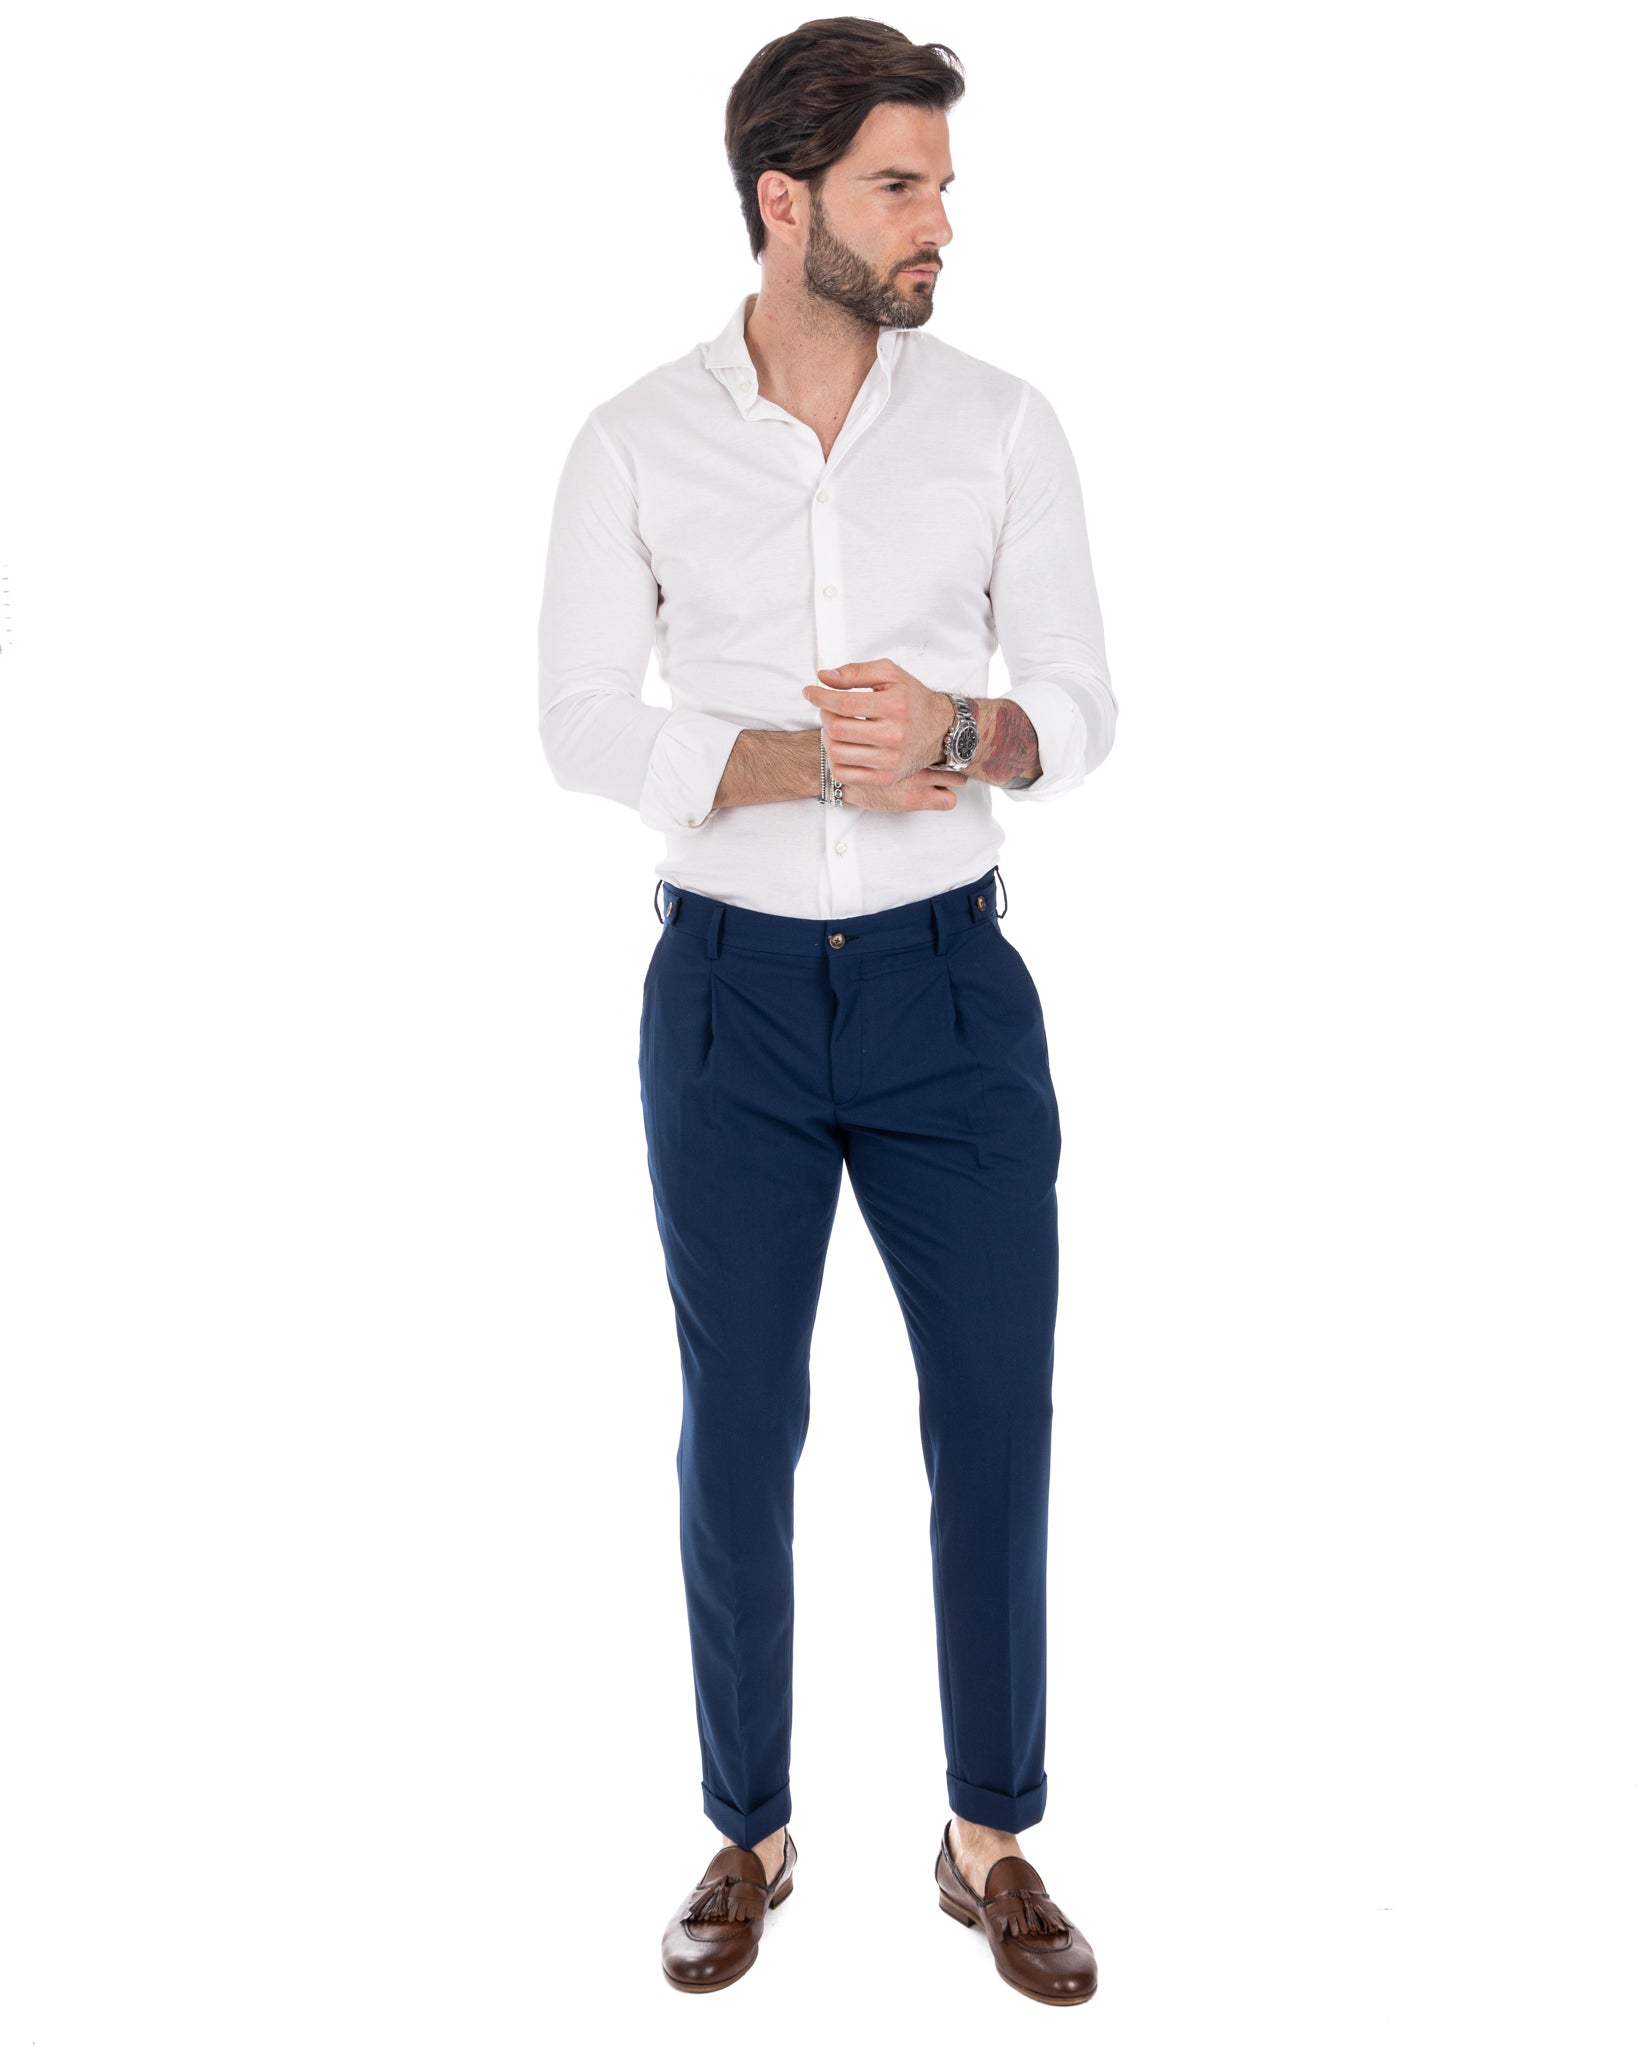 Milan - blue basic trousers